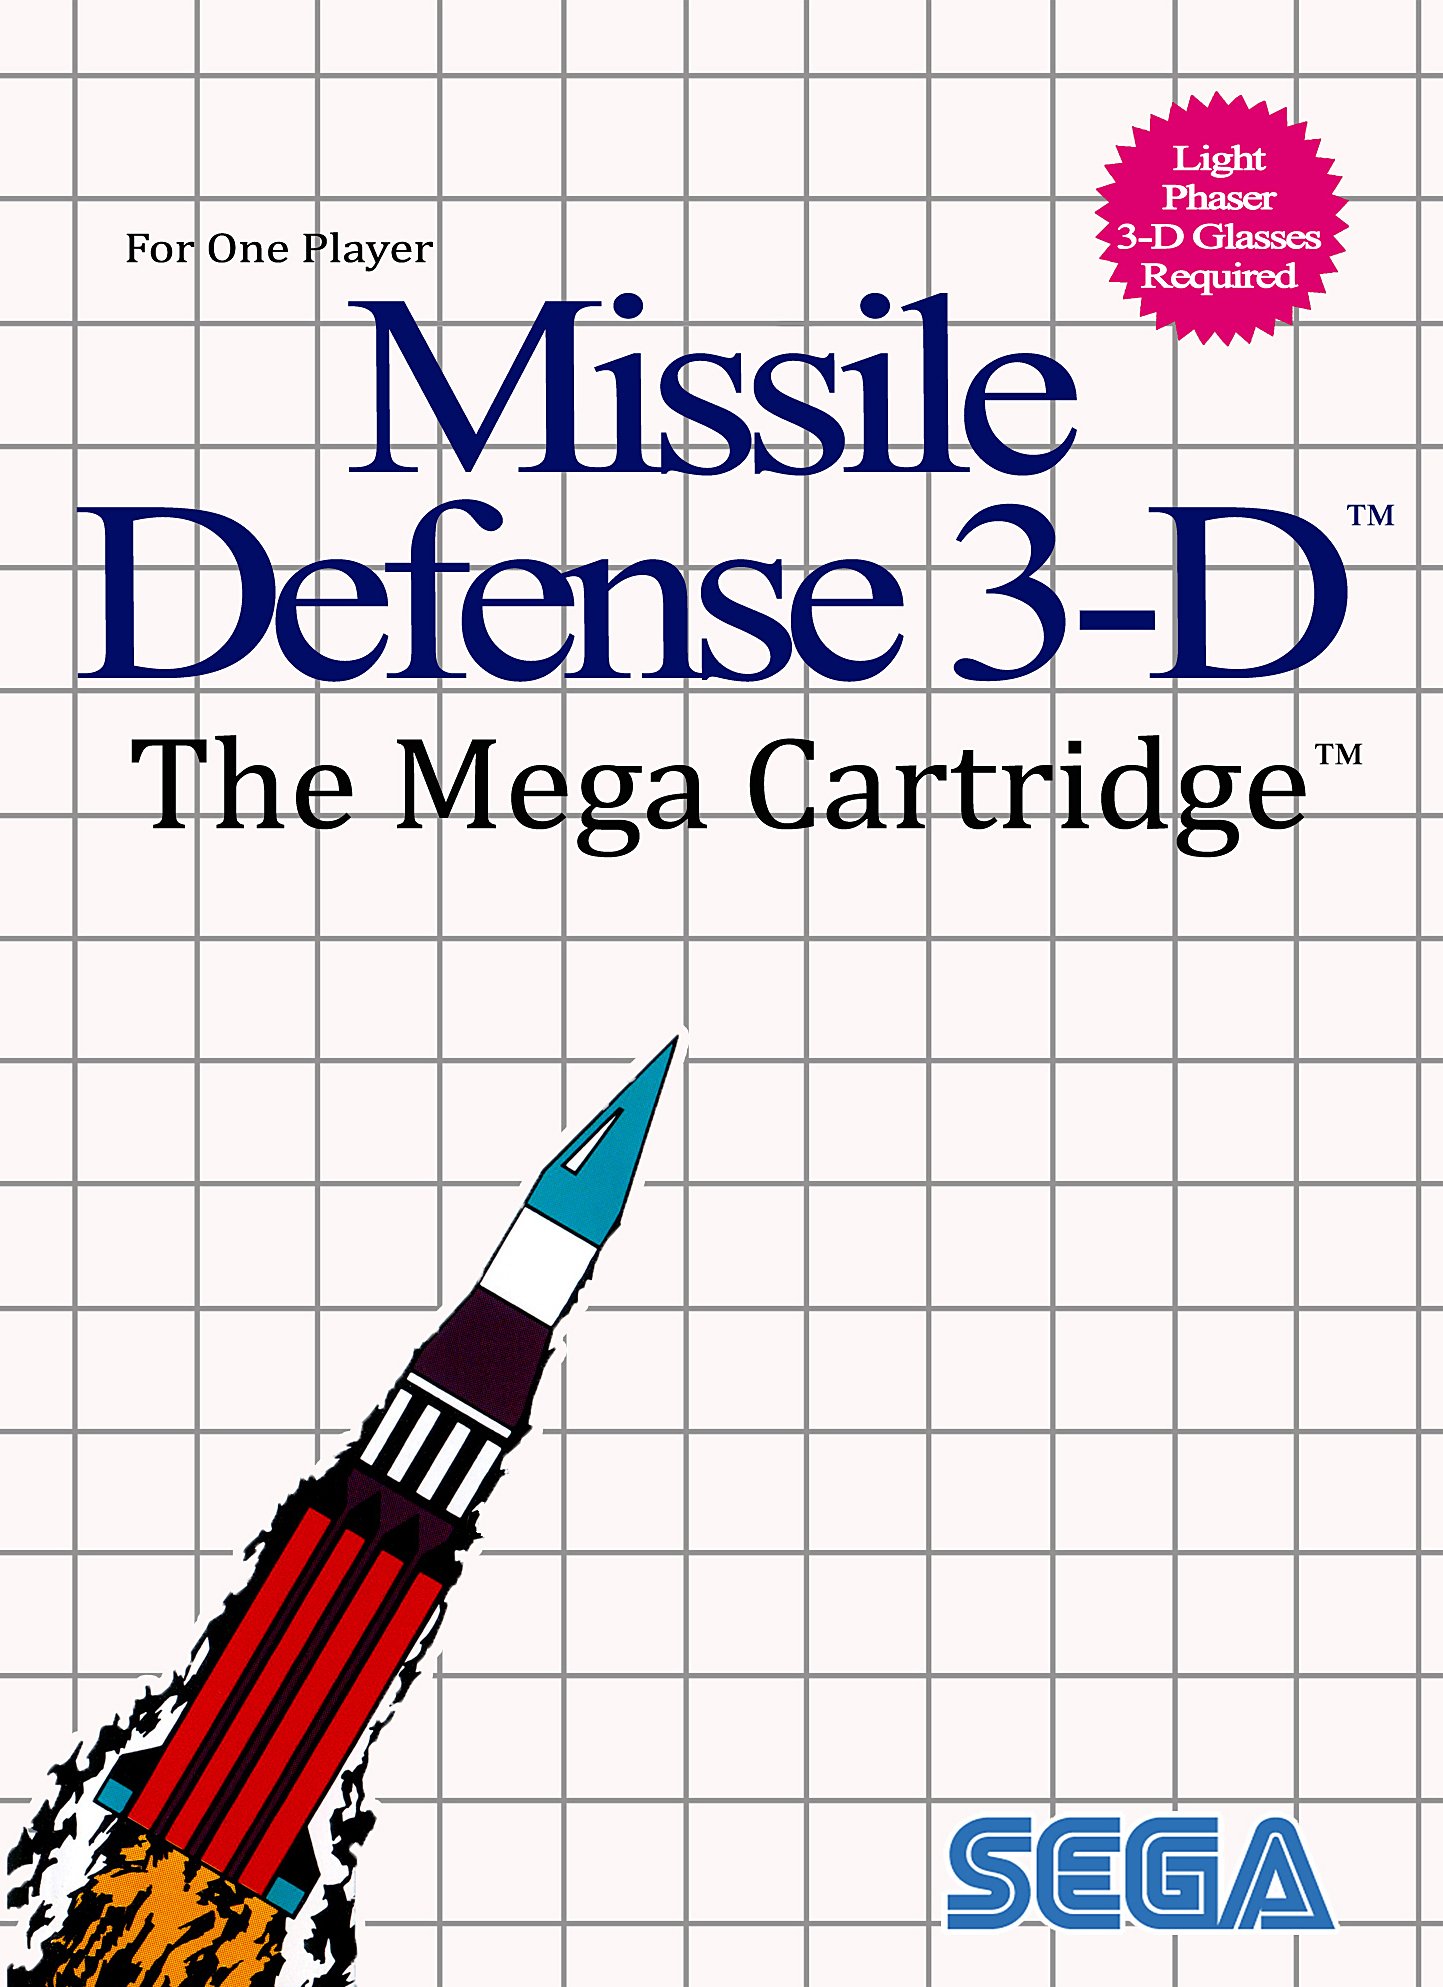 Image of Missile Defense 3-D